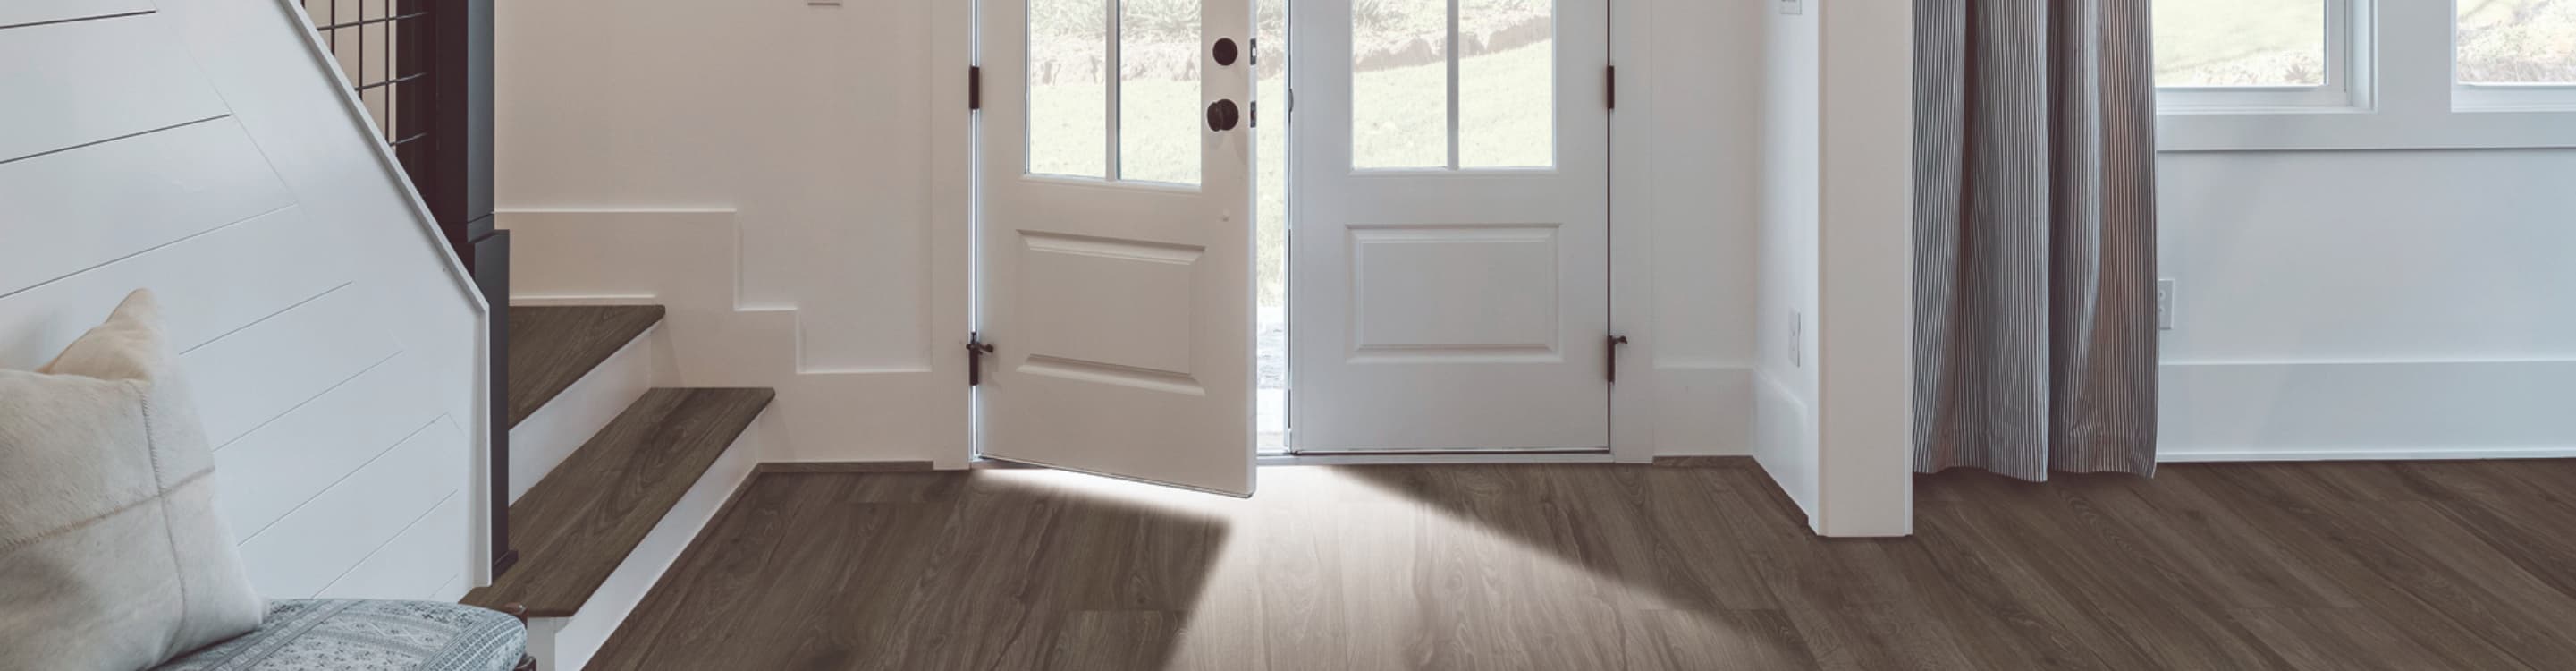 wood-look vinyl flooring in entryway and stairway